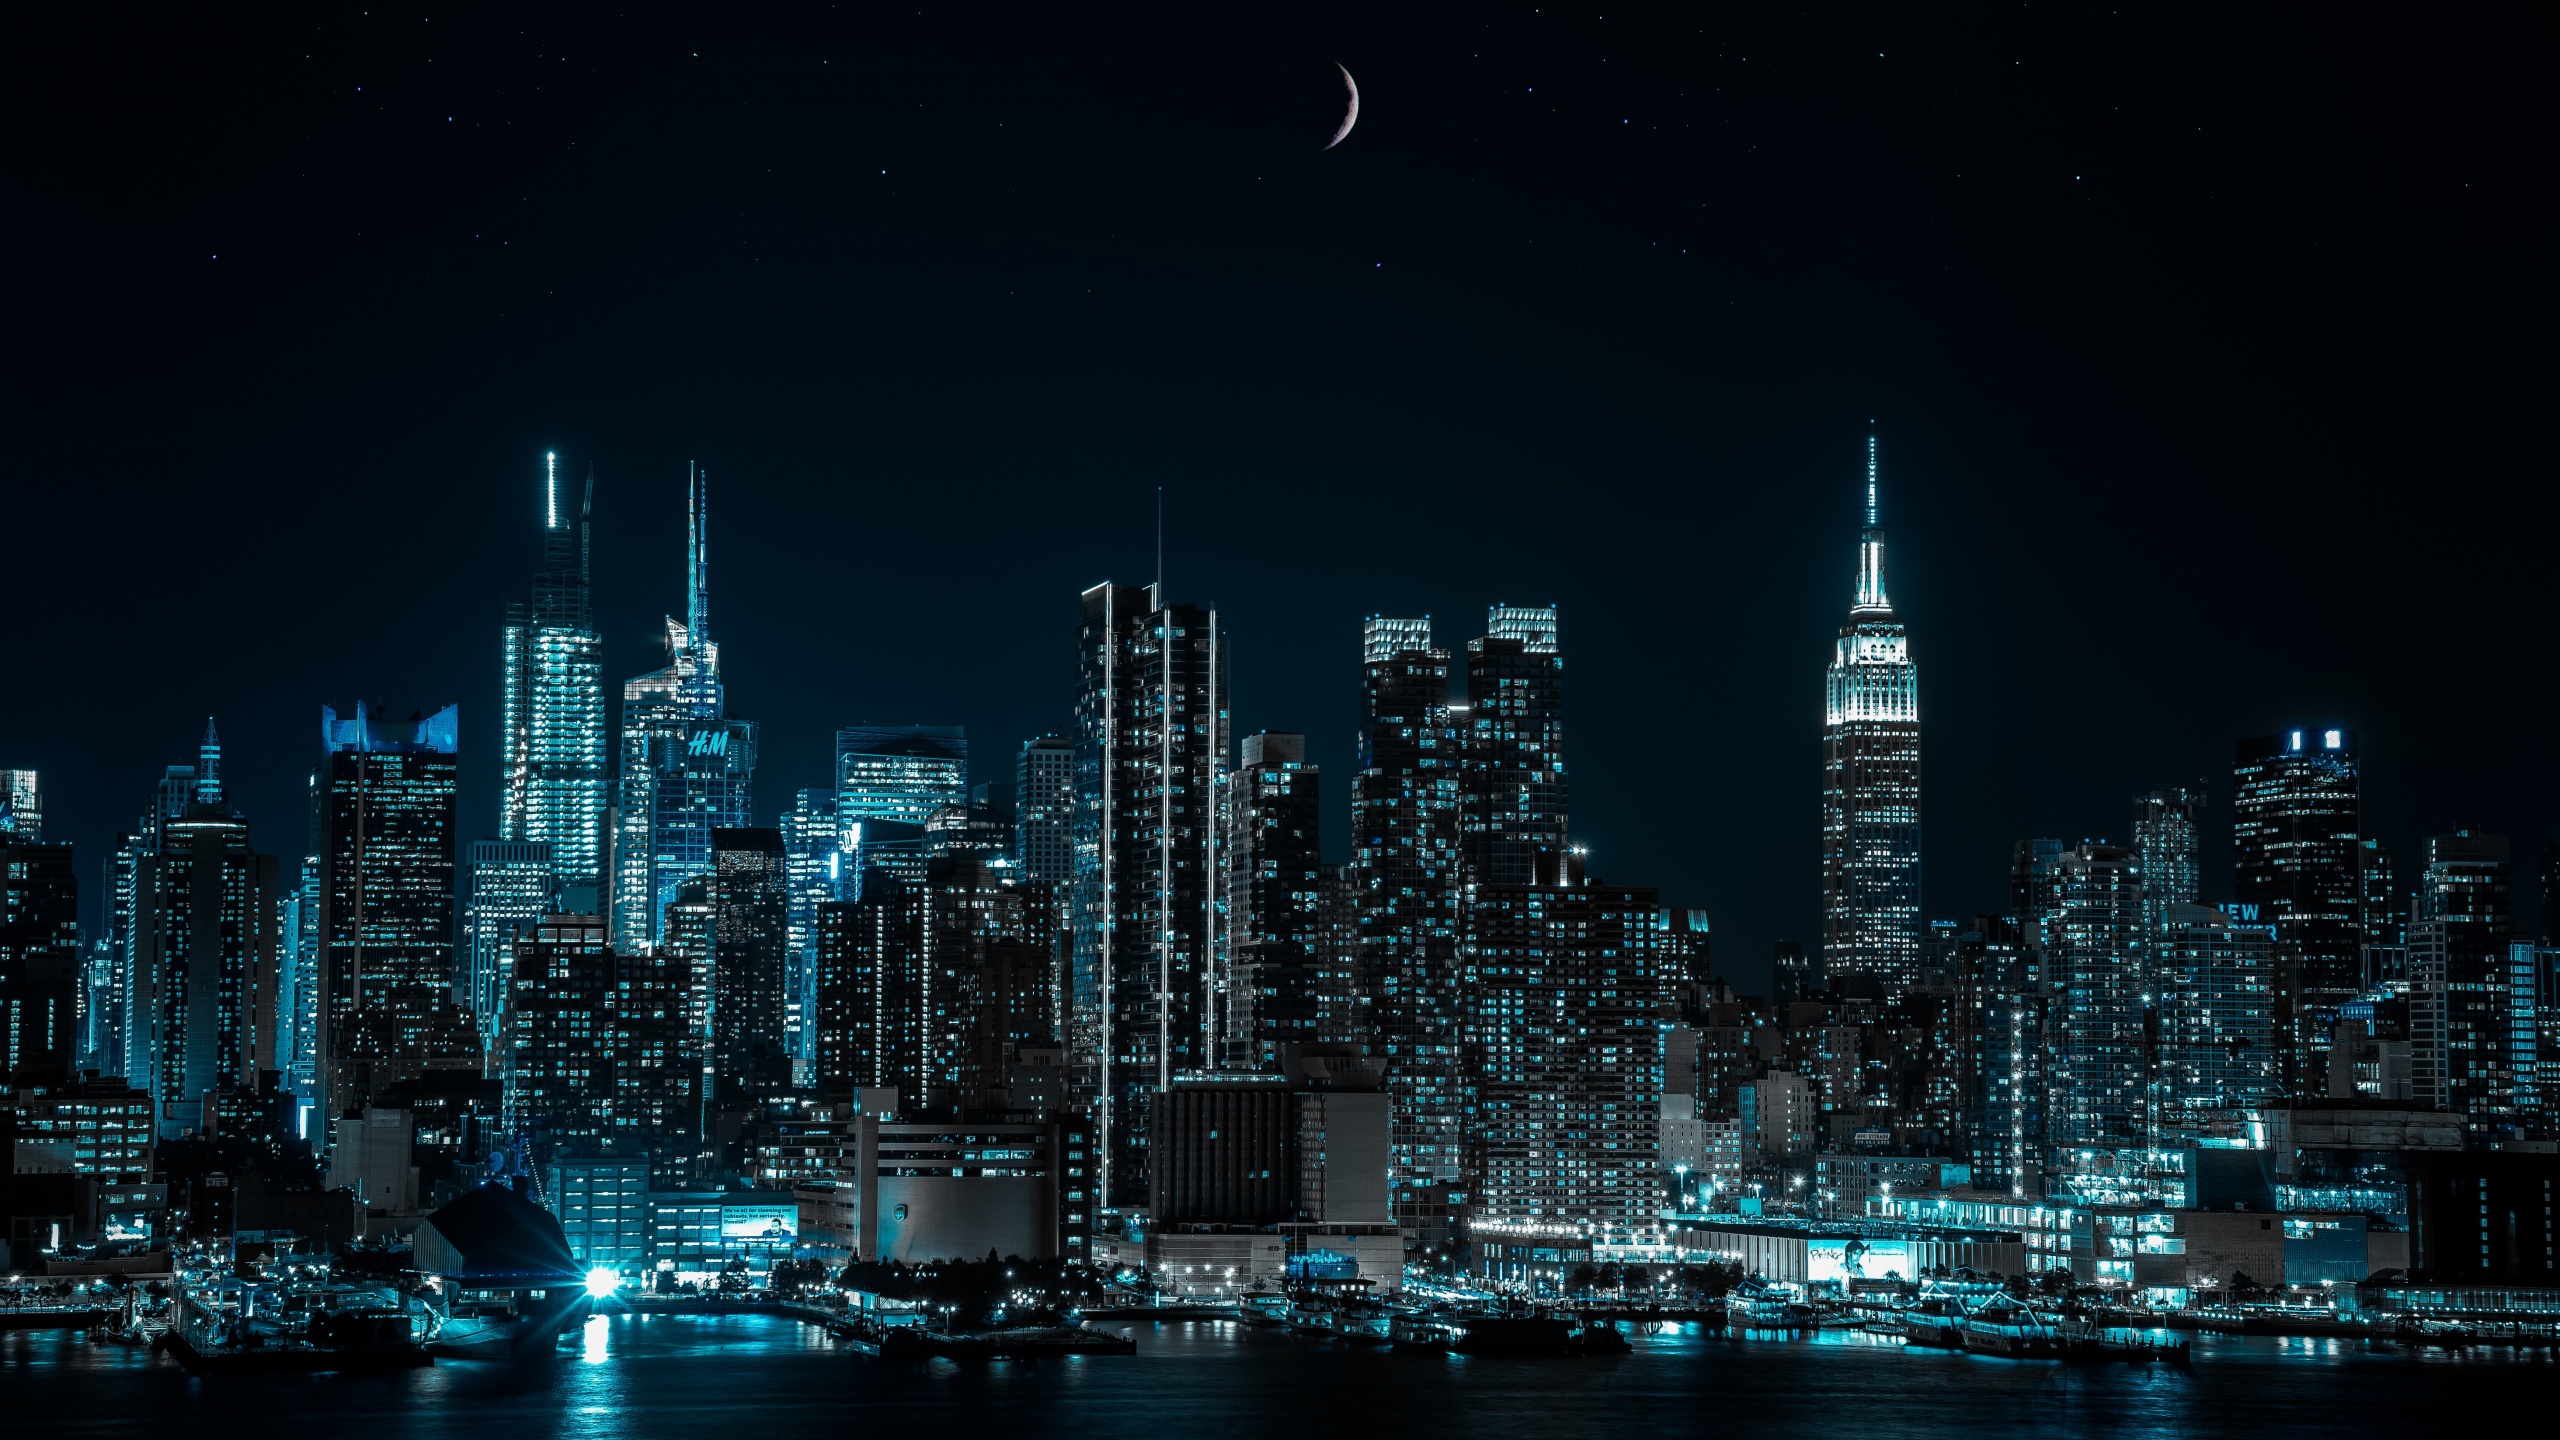 New York City nightscape wallpaper là bức hình nền tuyệt đẹp của thành phố đầy năng lượng và sự kỳ diệu. Những tòa nhà cao chọc trời được chiếu sáng lung linh tạo nên một khung cảnh vô cùng sang trọng và ấn tượng. Hãy xem hình ảnh liên quan để tận hưởng vẻ đẹp của thành phố đêm.